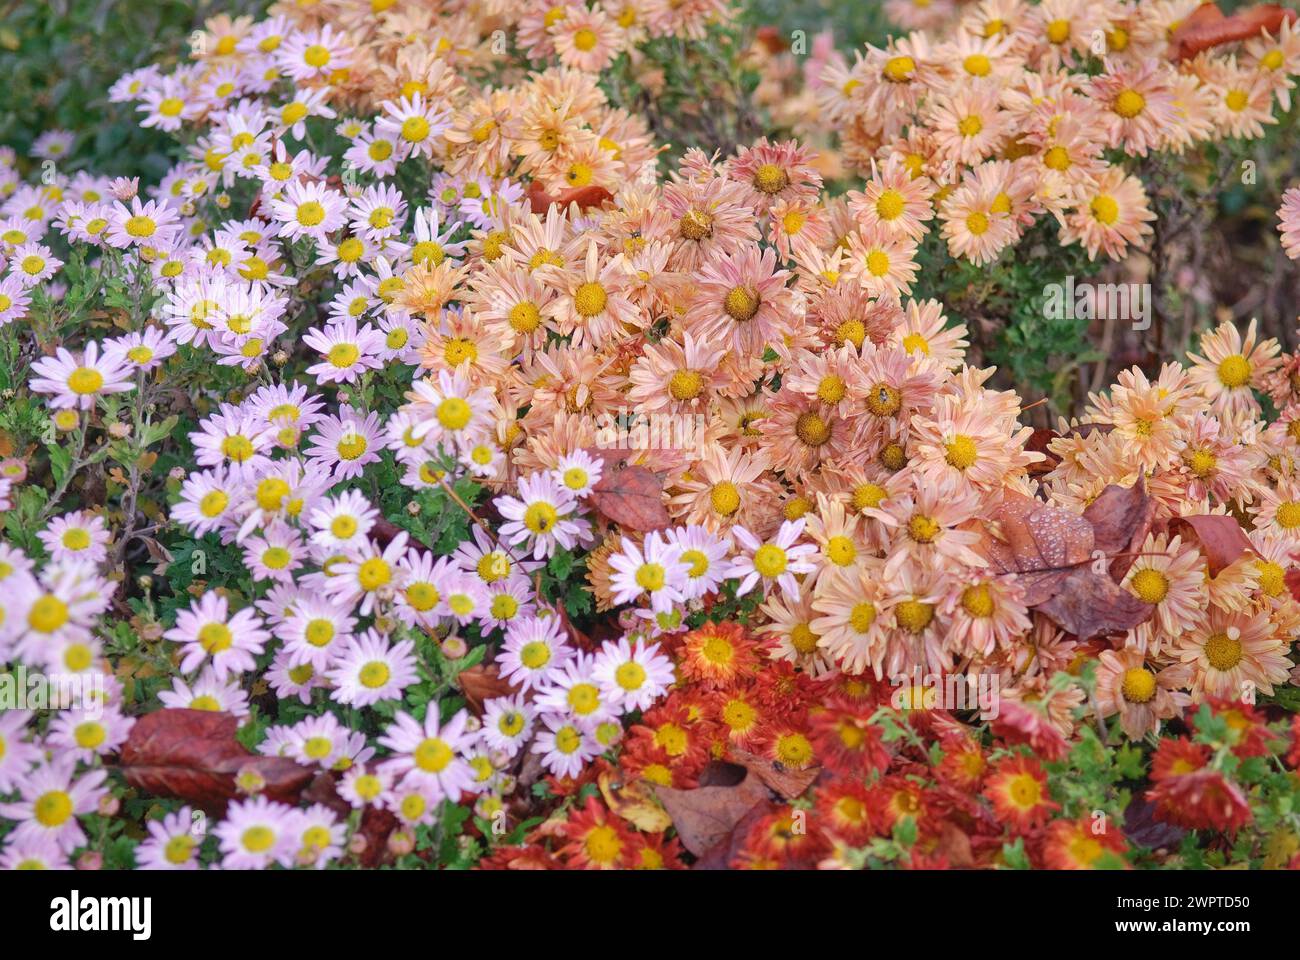 Chrysanthemum (Chrysanthemum 'Kleiner Bernstein'), Chrysanthemum (Chrysanthemum 'Hebe'), Chrysanthemum (Chrysanthemum 'Rumpelstiltskin'), Marquardt Stock Photo